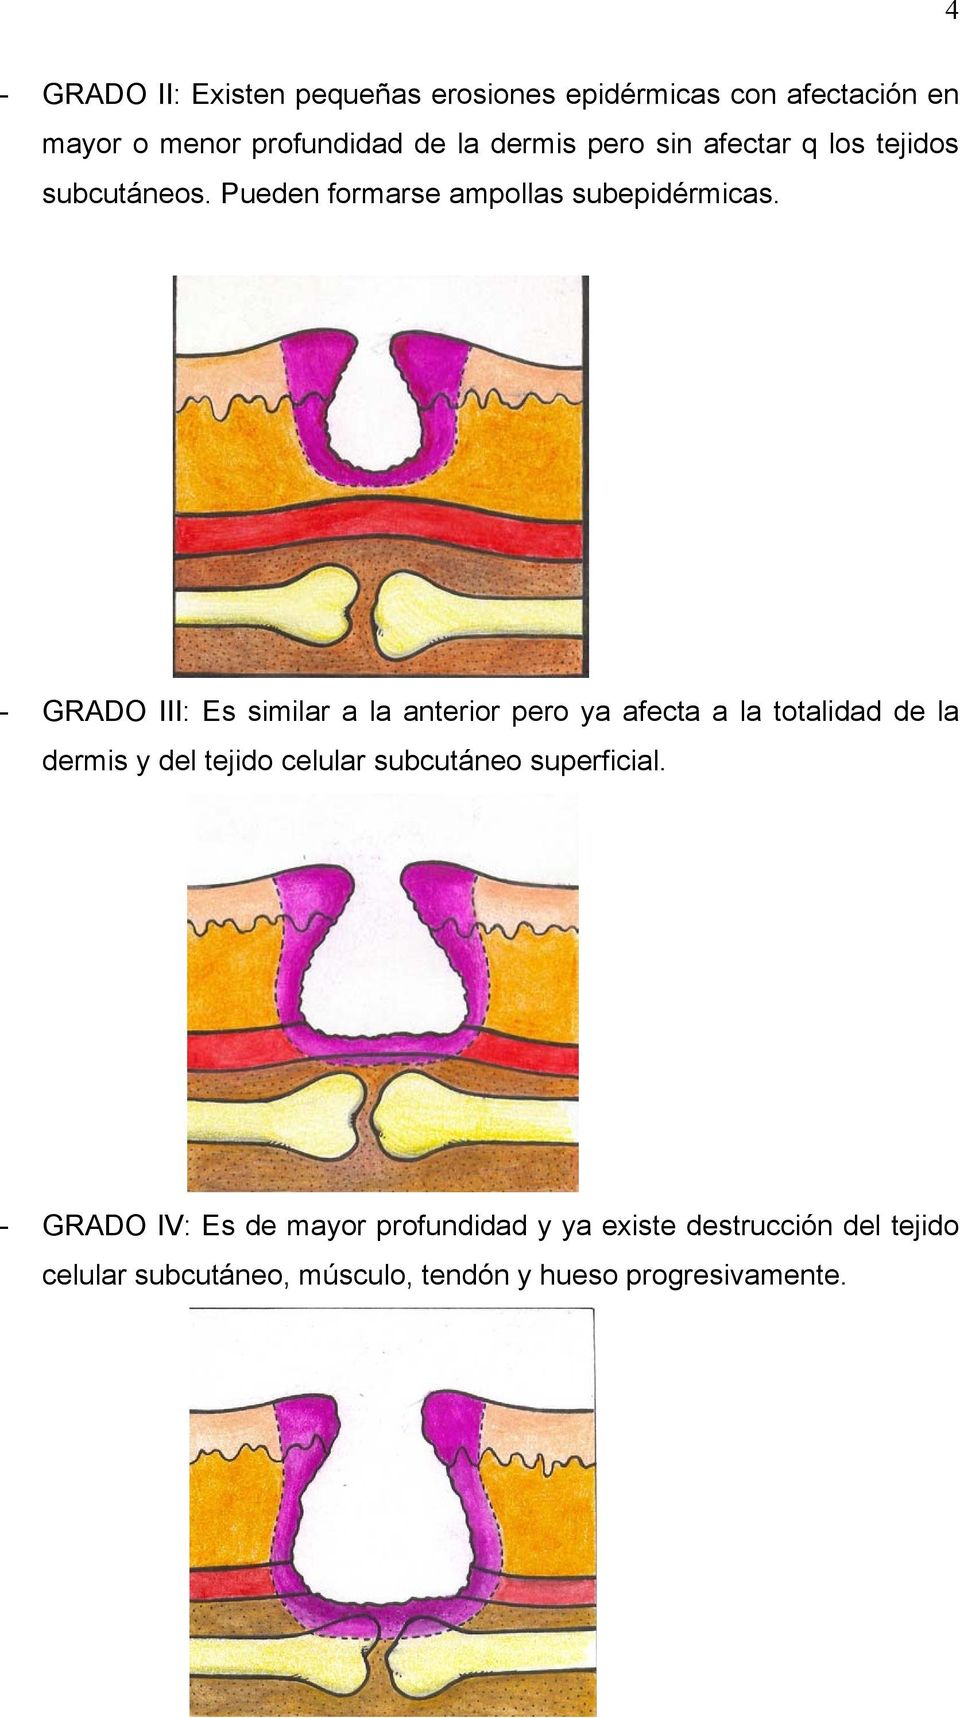 - GRADO III: Es similar a la anterior pero ya afecta a la totalidad de la dermis y del tejido celular subcutáneo